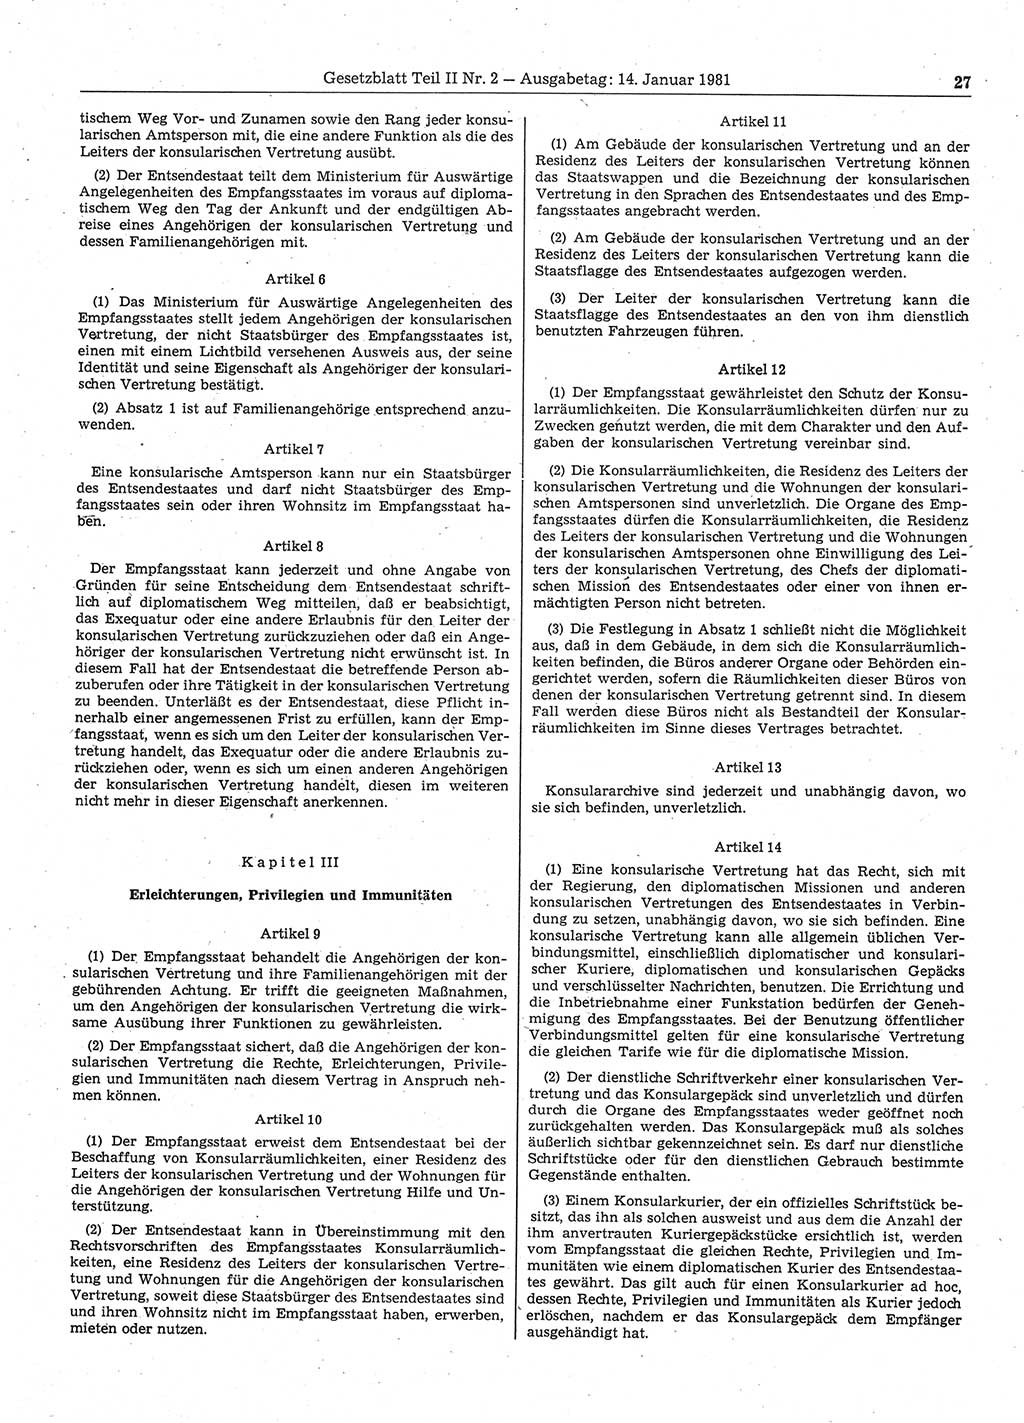 Gesetzblatt (GBl.) der Deutschen Demokratischen Republik (DDR) Teil ⅠⅠ 1981, Seite 27 (GBl. DDR ⅠⅠ 1981, S. 27)